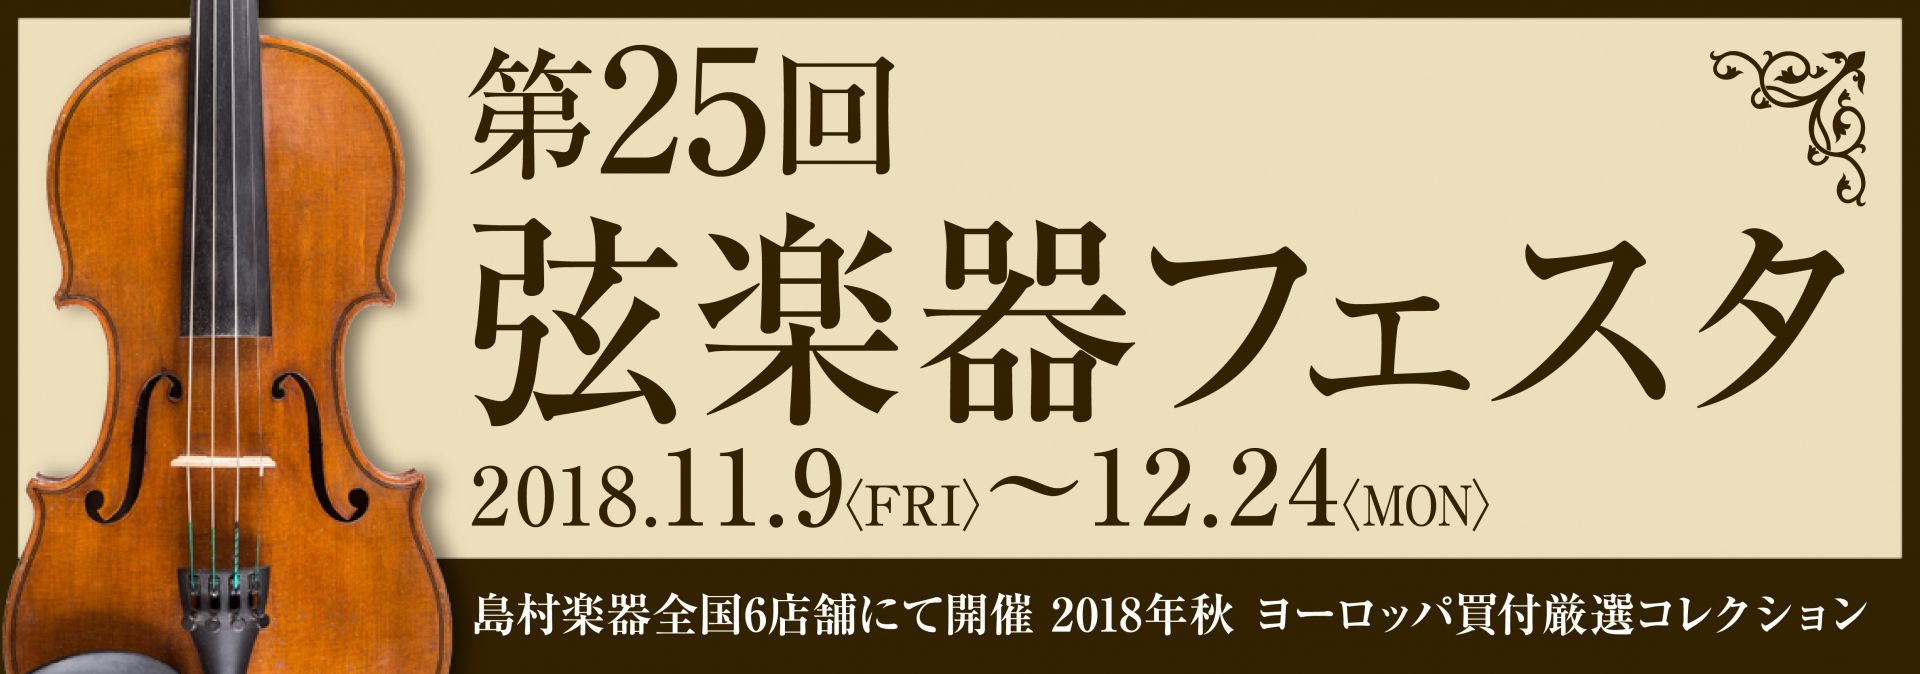 *弦楽器フェスタ2018についてはこちらからどうぞ [https://www.shimamura.co.jp/p/festa/strings-exhibition/index.html:title=] *弦楽器ファンの方、お待たせしました！ **増税前の今がチャンス 今年も島村楽器では弦楽器フェスタ […]